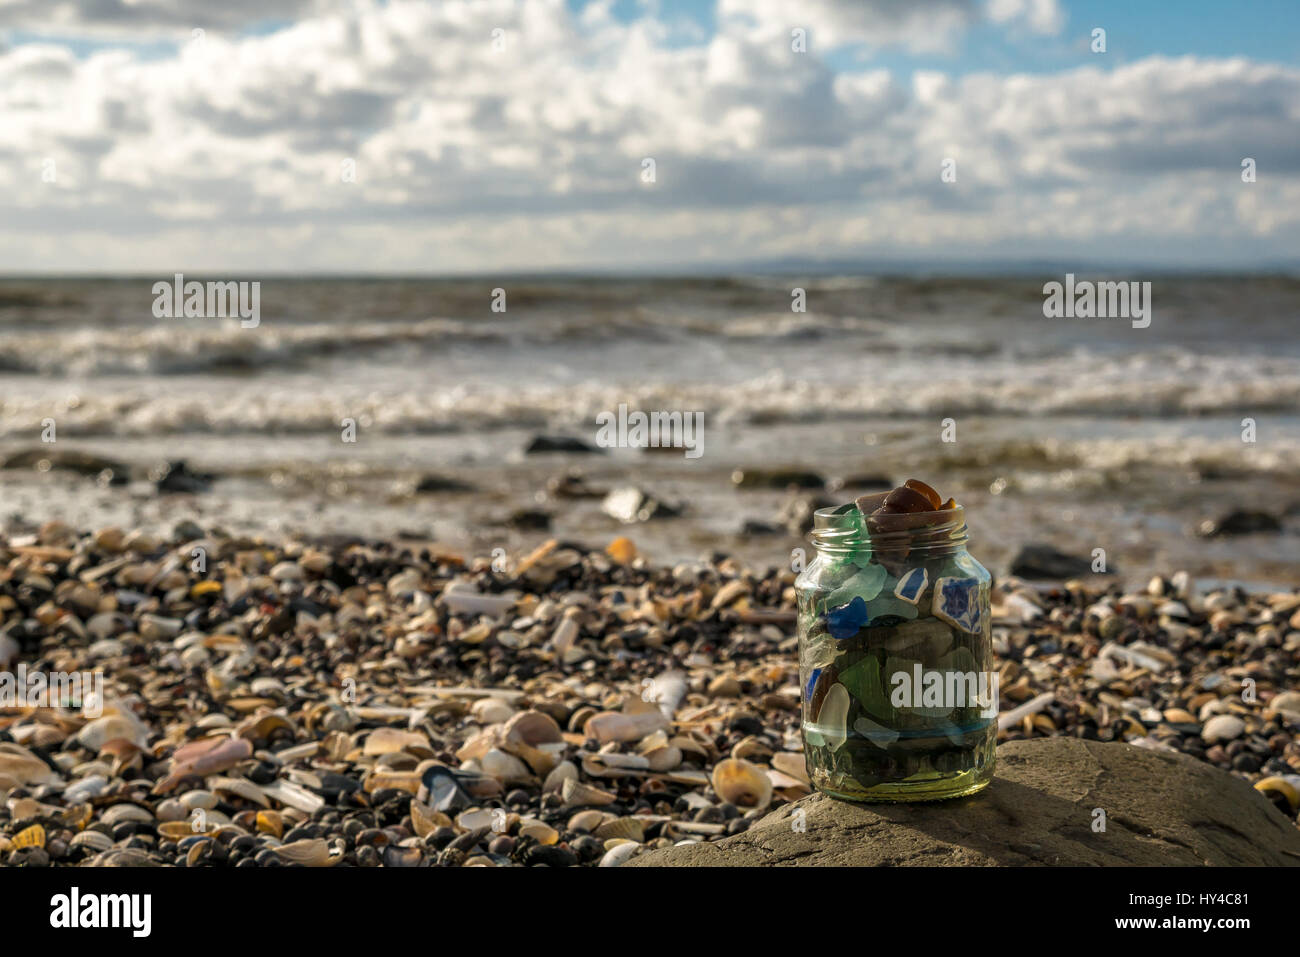 Perspective basse close up of collection de mer beachcombed en verre bocal en verre, East Lothian, Scotland, UK, aux beaux jours Banque D'Images